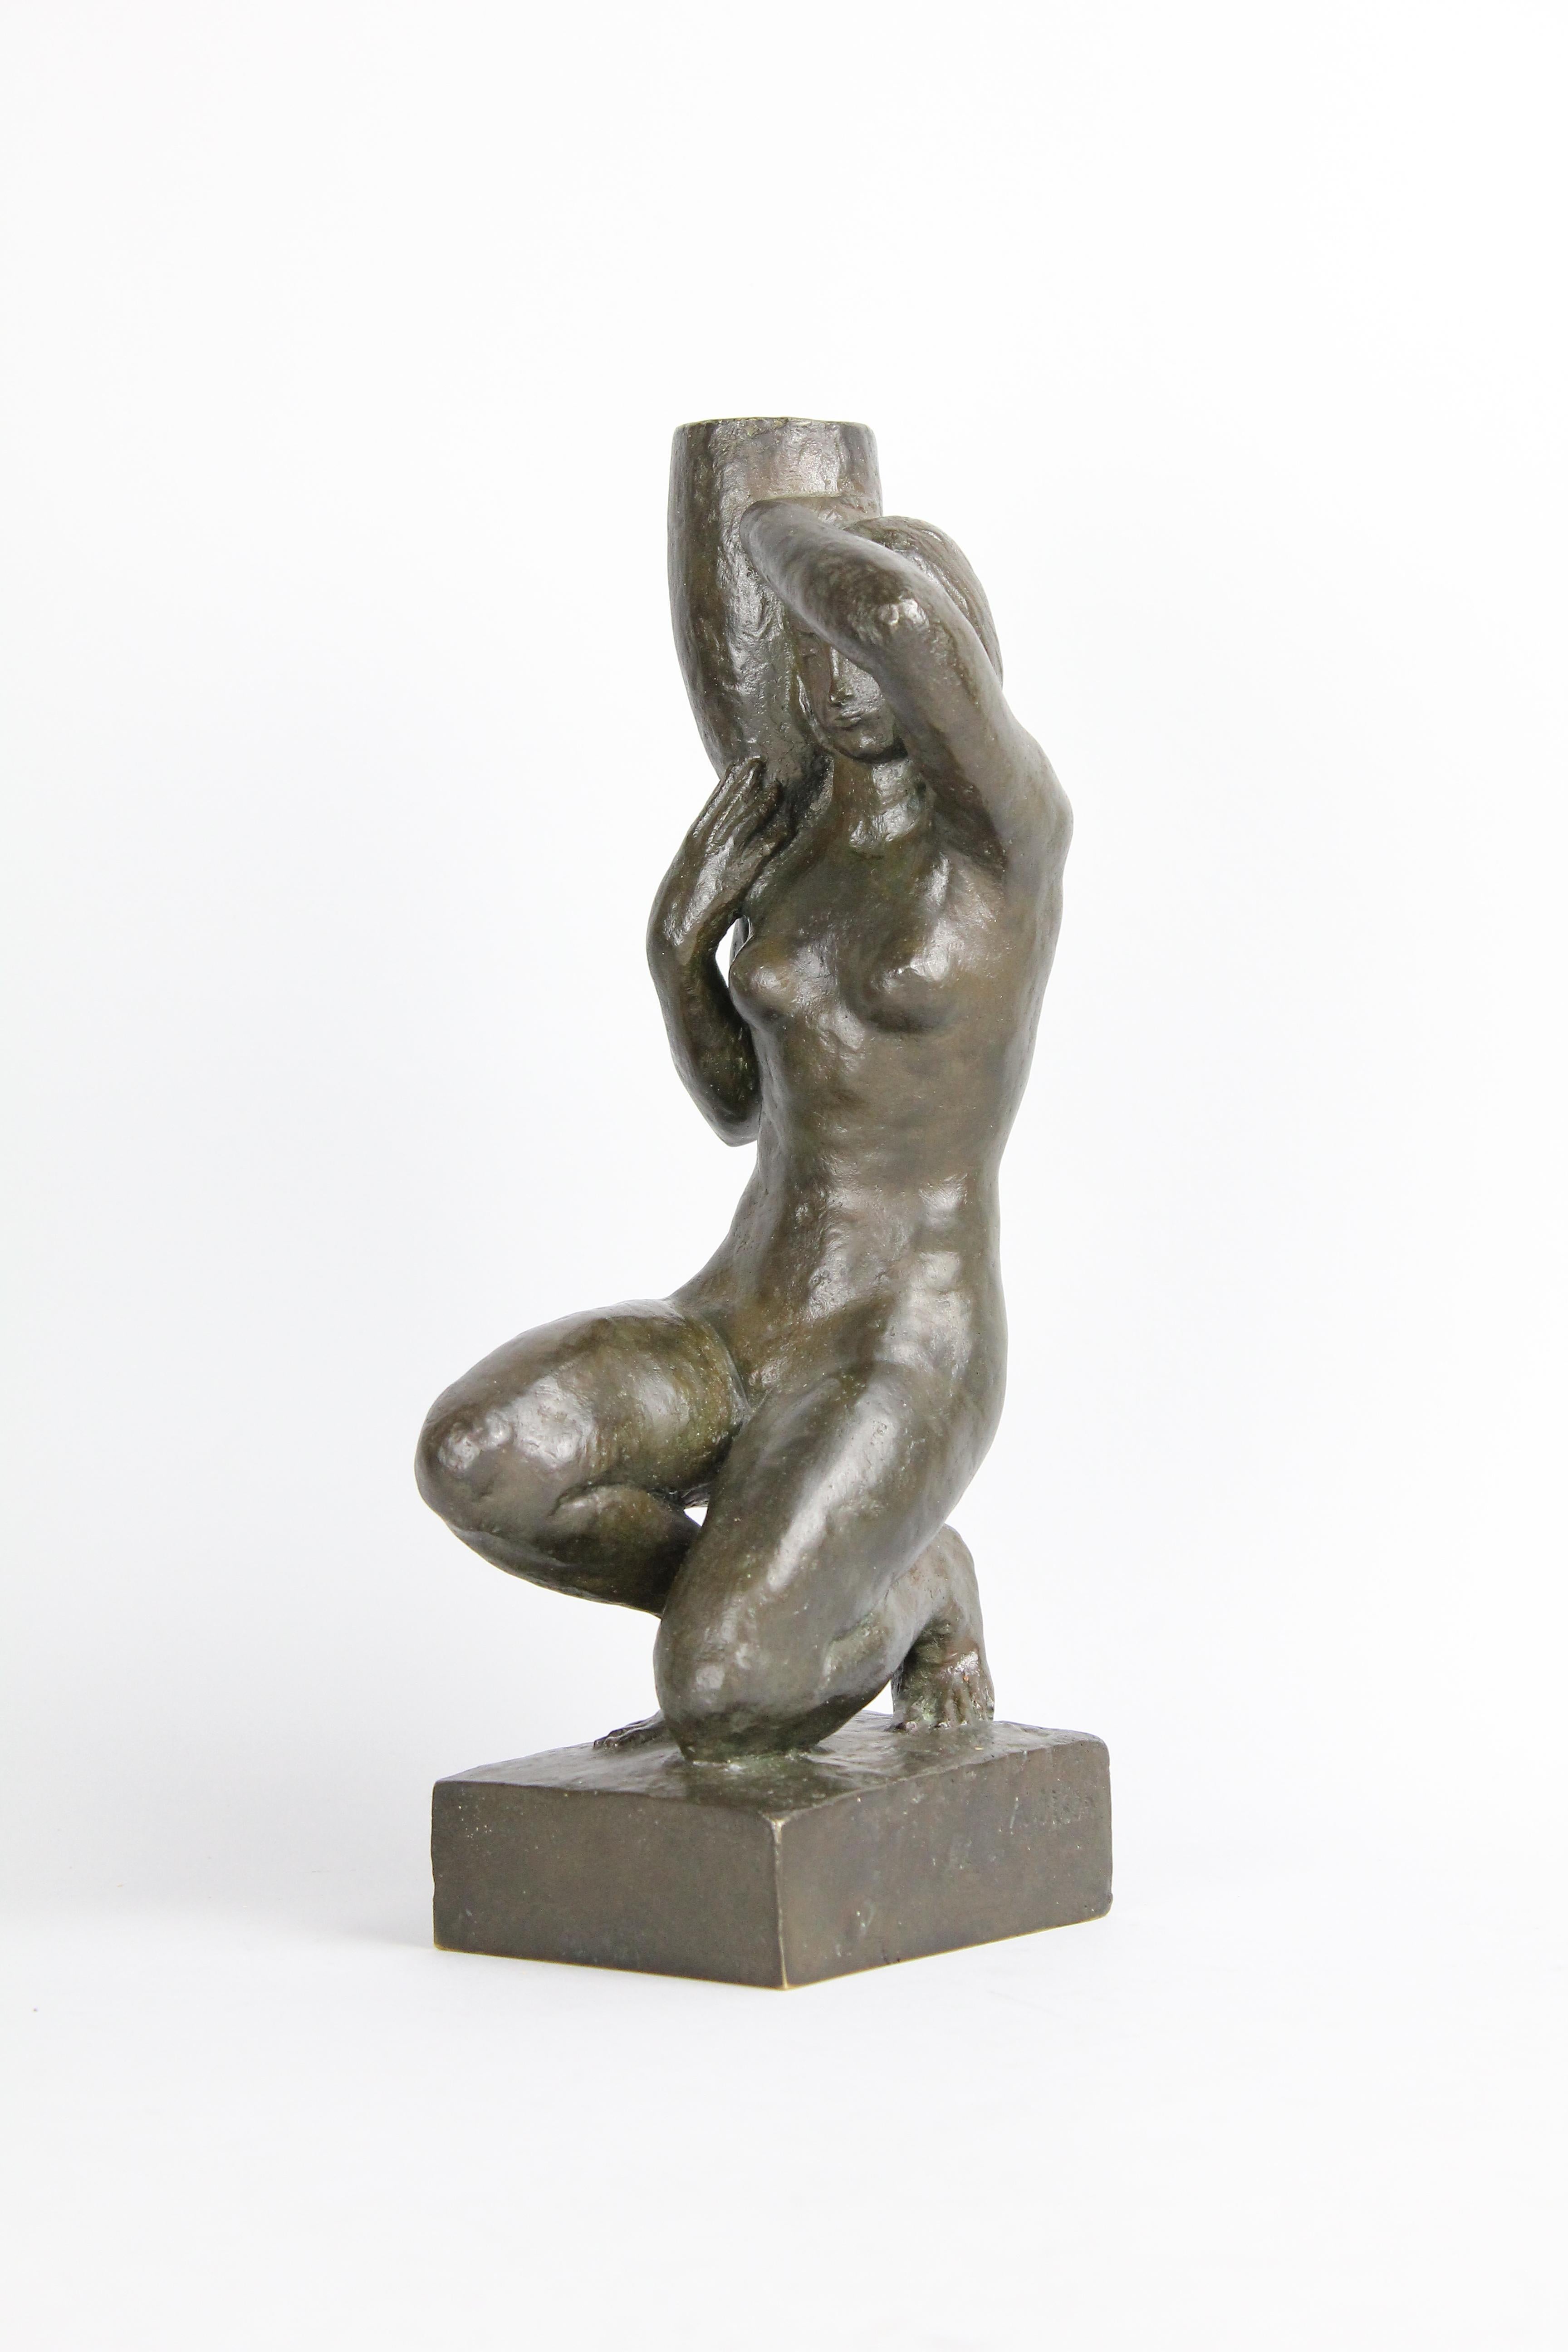 Très belle sculpture en bronze représentant une jeune fille nue agenouillée.
Elle est signée 